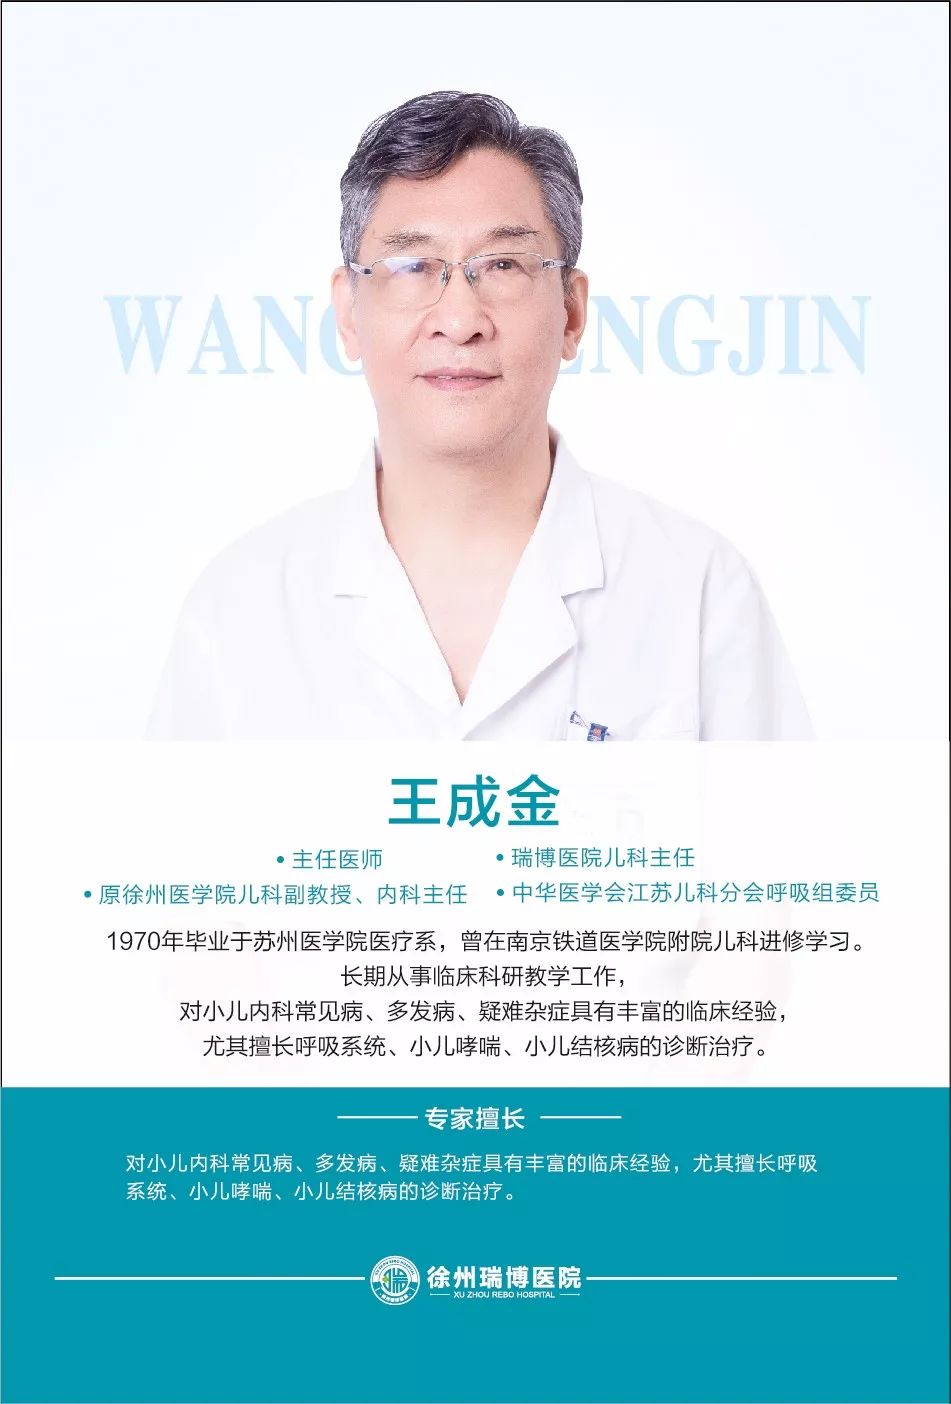 『瑞博医院专家讲堂』第四期:疱疹性咽颊炎预防与治疗护理措施